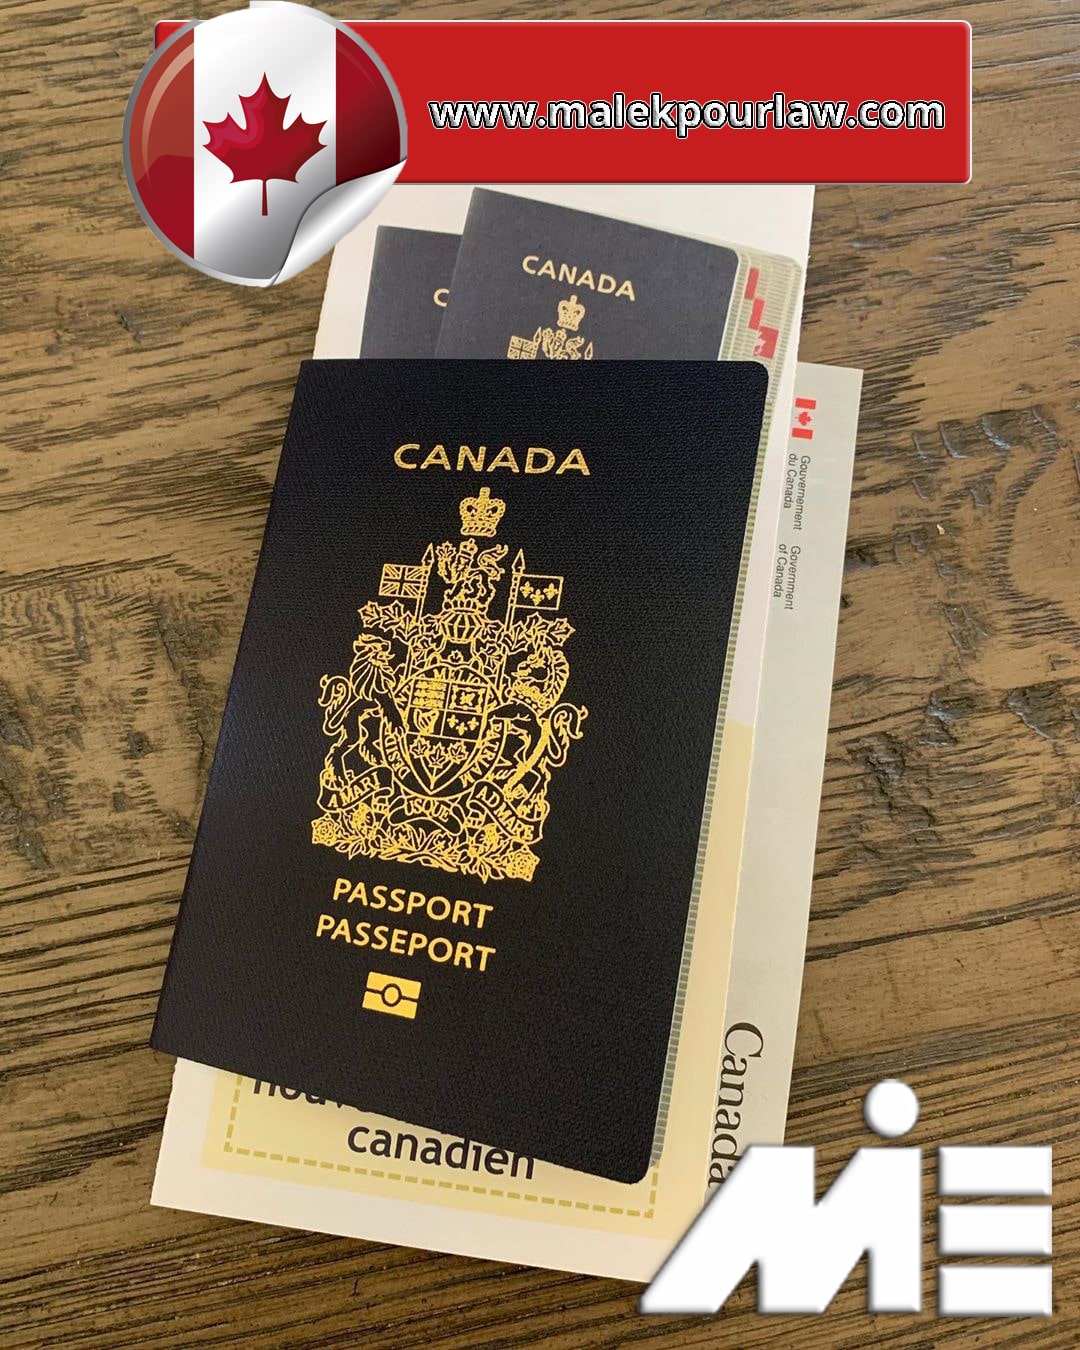 پاسپورت کانادا - تابعیت کانادا - شهروندی کانادا - کانادا - سفر به کانادا